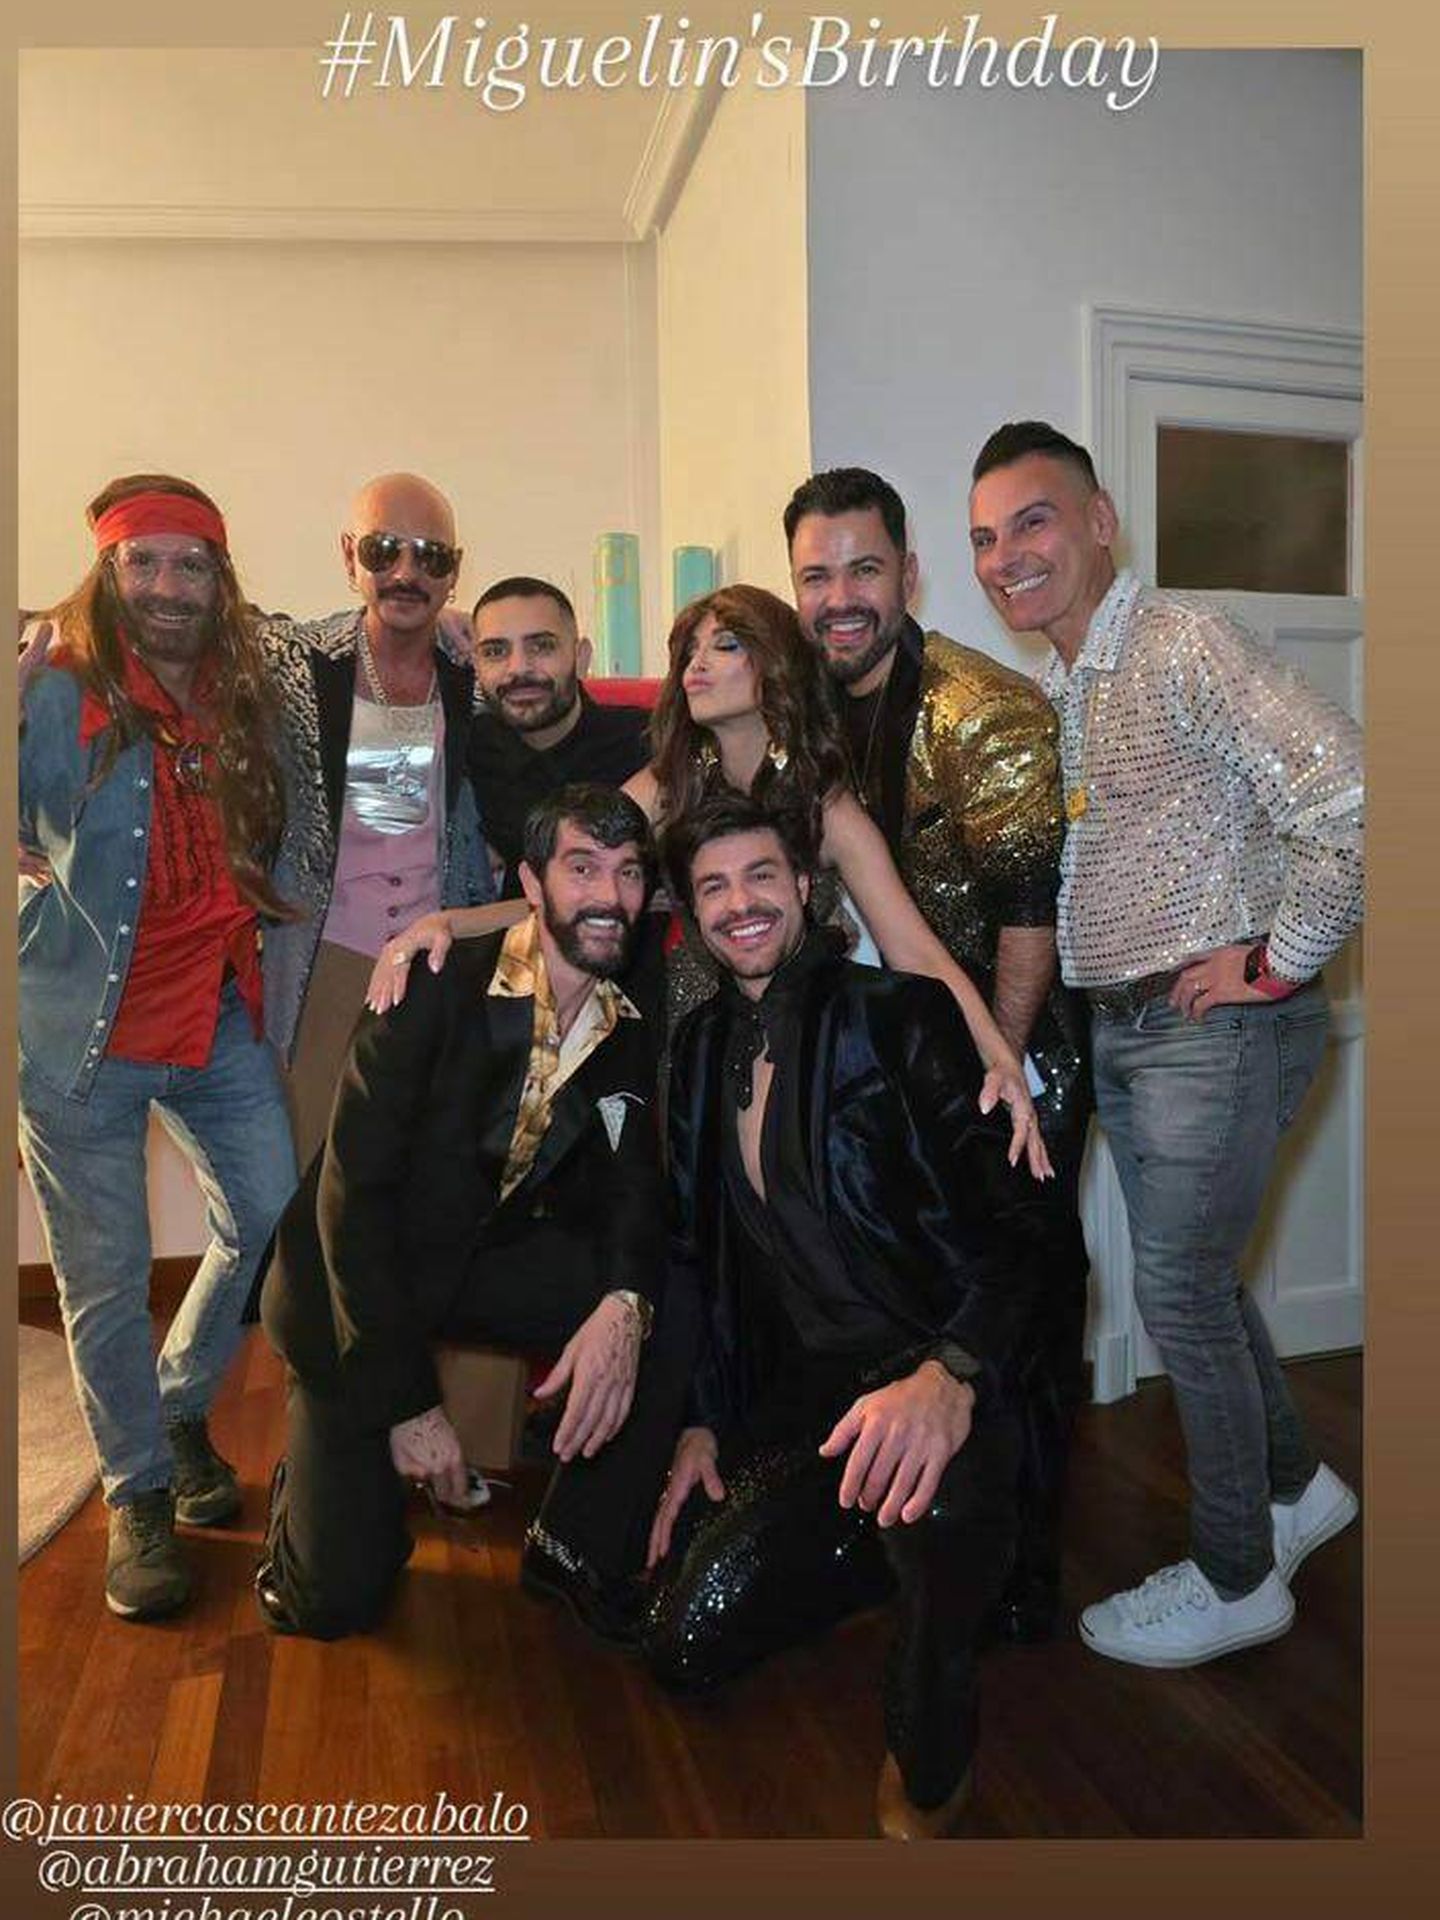 Paula, Miguel Torres y sus amigos en la fiesta de cumpleaños de su amigo y maquillador Miguel. (Instagram/@pau_eche)